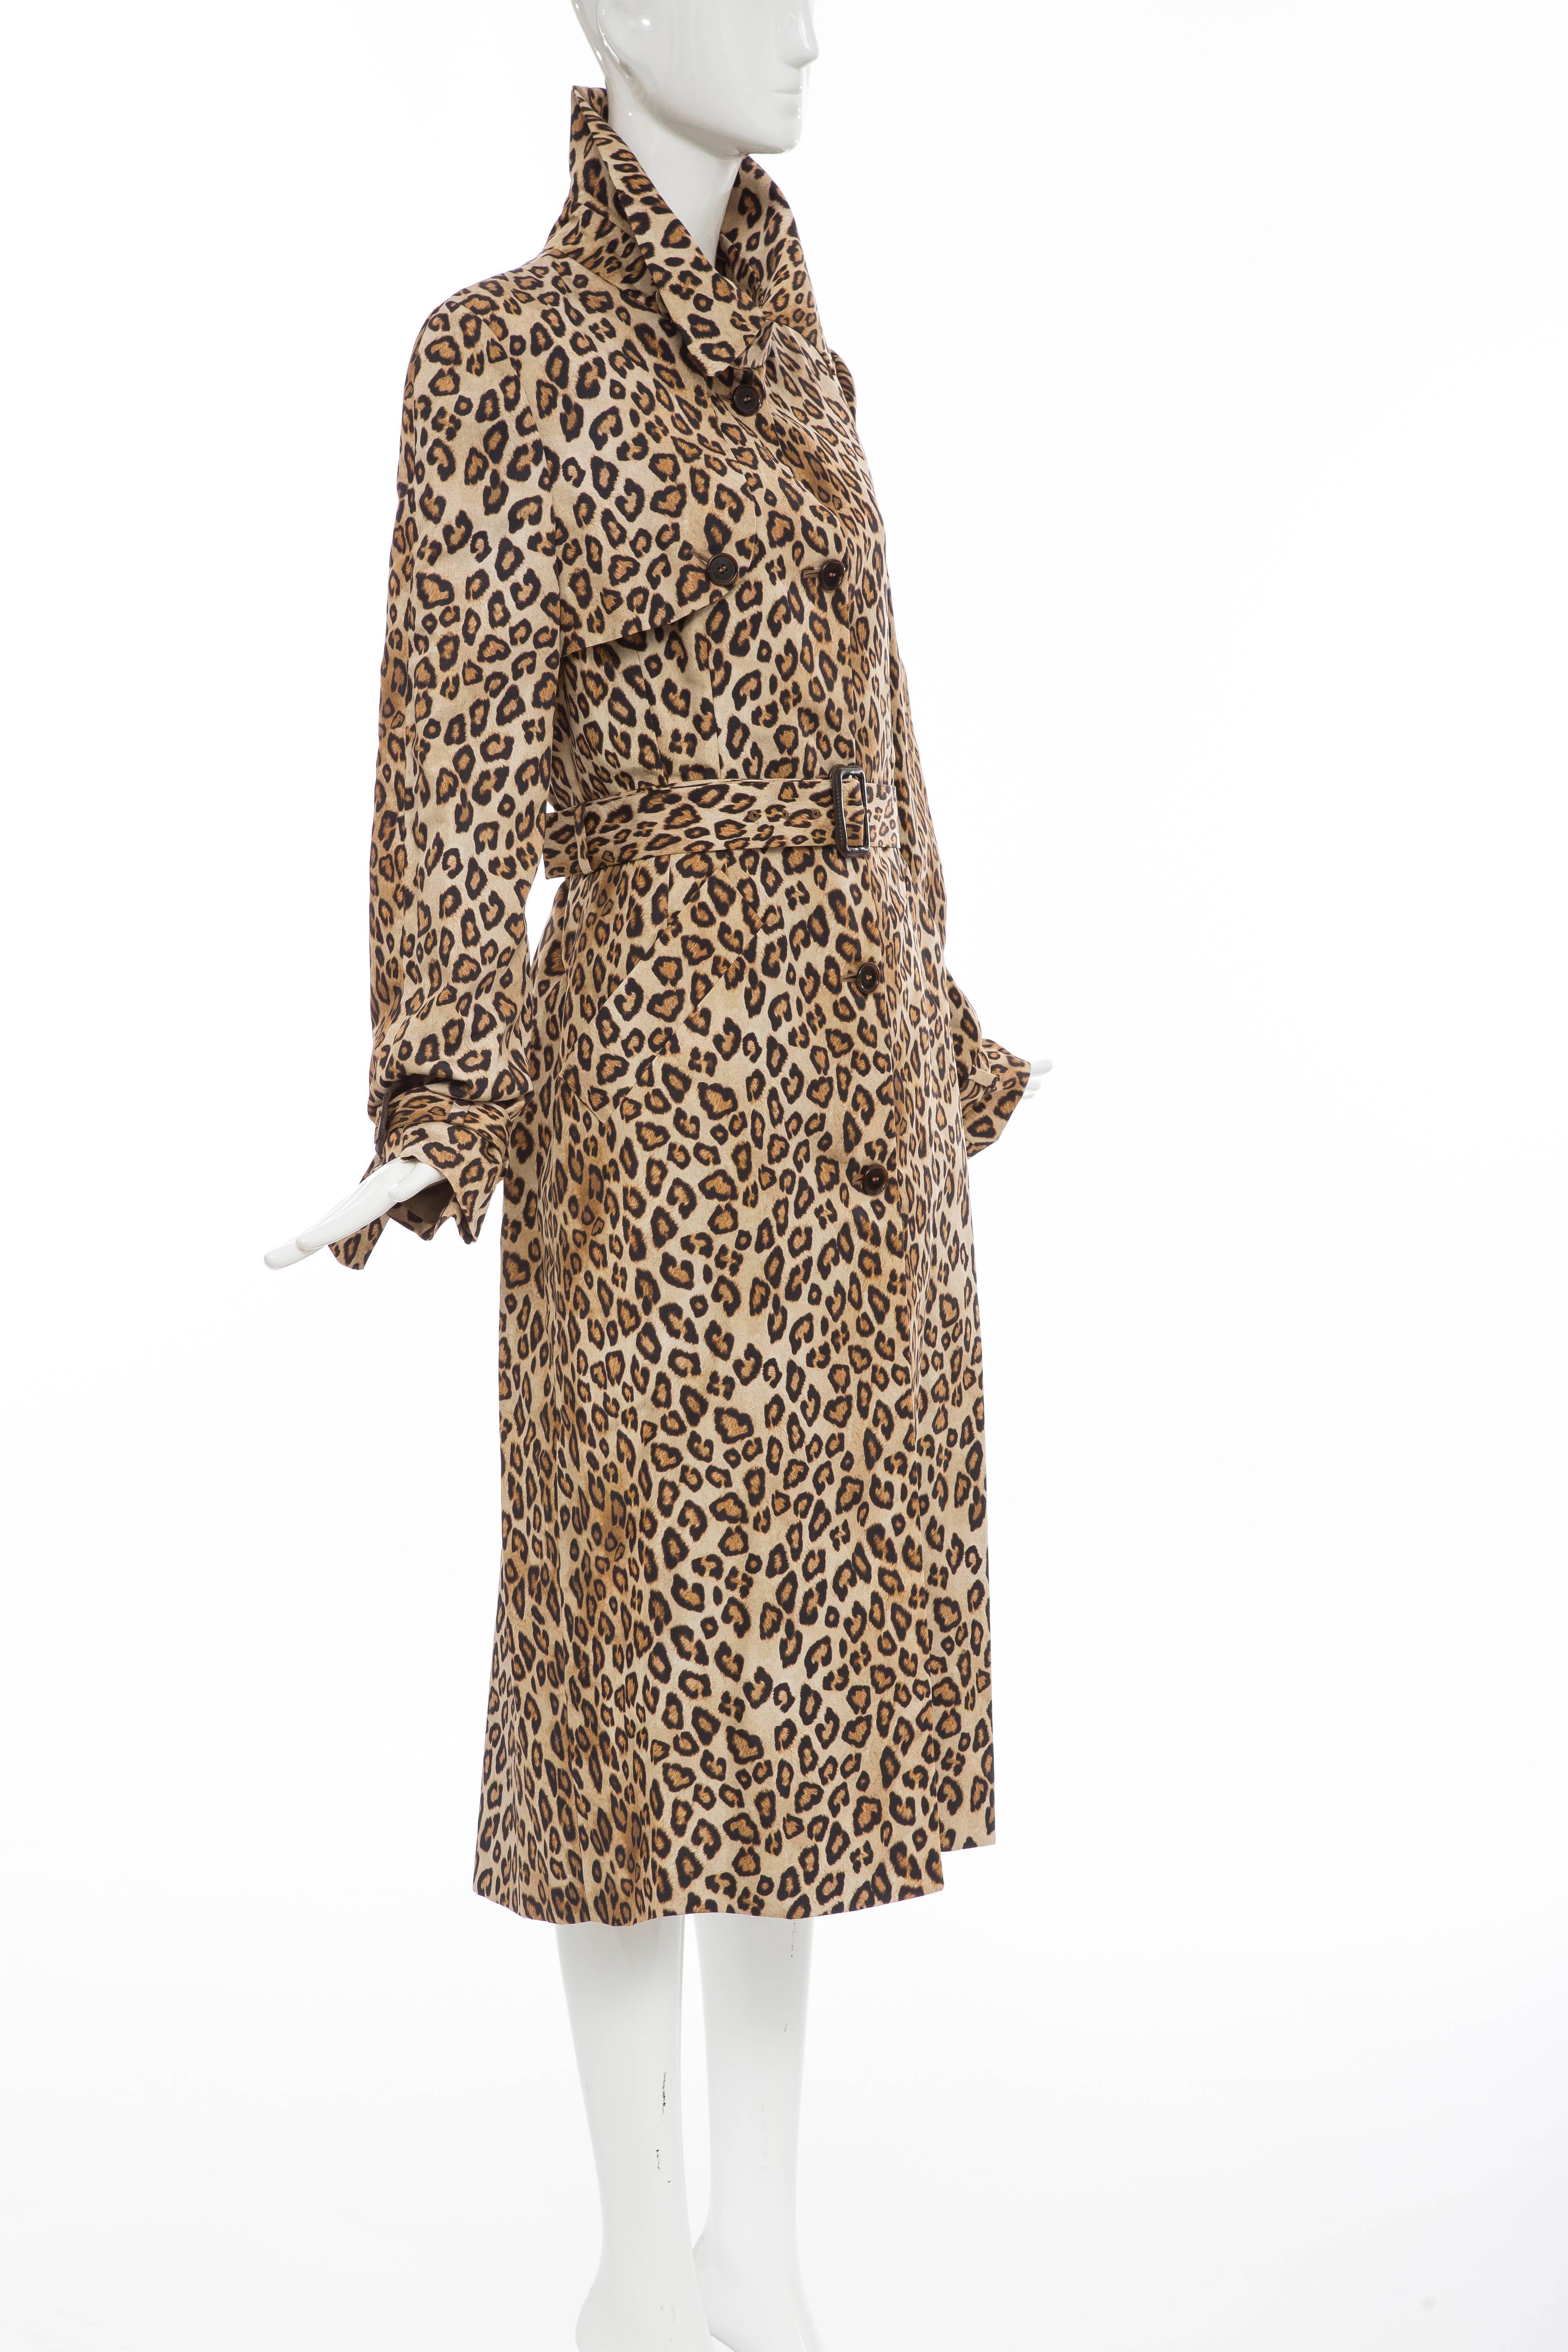 Women's Alexander McQueen Silk Leopard Print Trench Coat, Autumn-Winter 2005